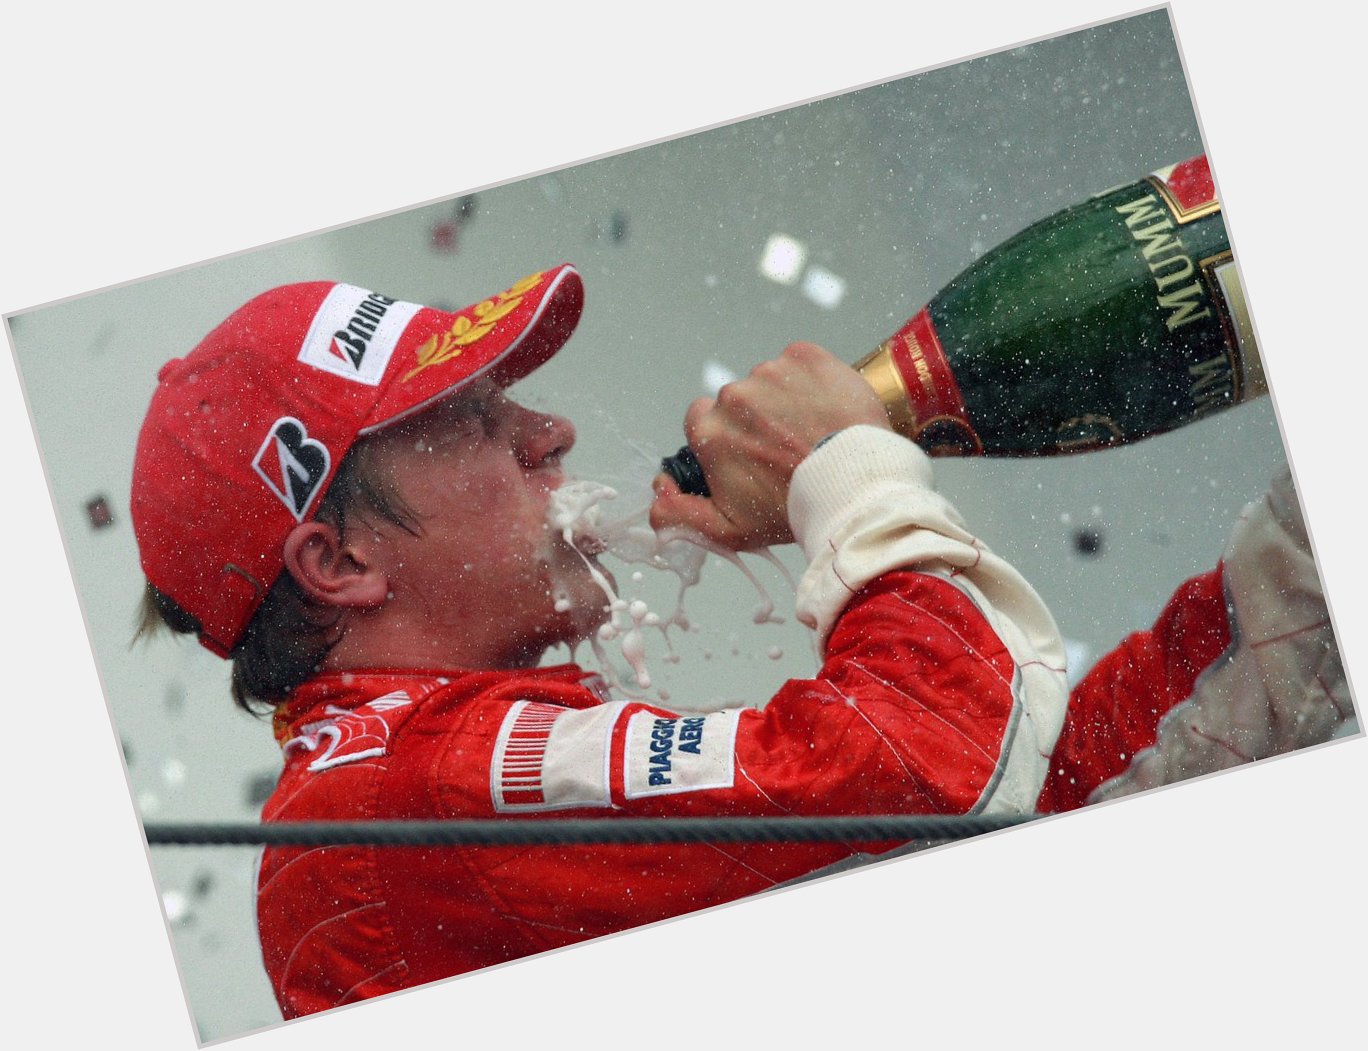 Happy 40th birthday to Kimi Raikkonen! 